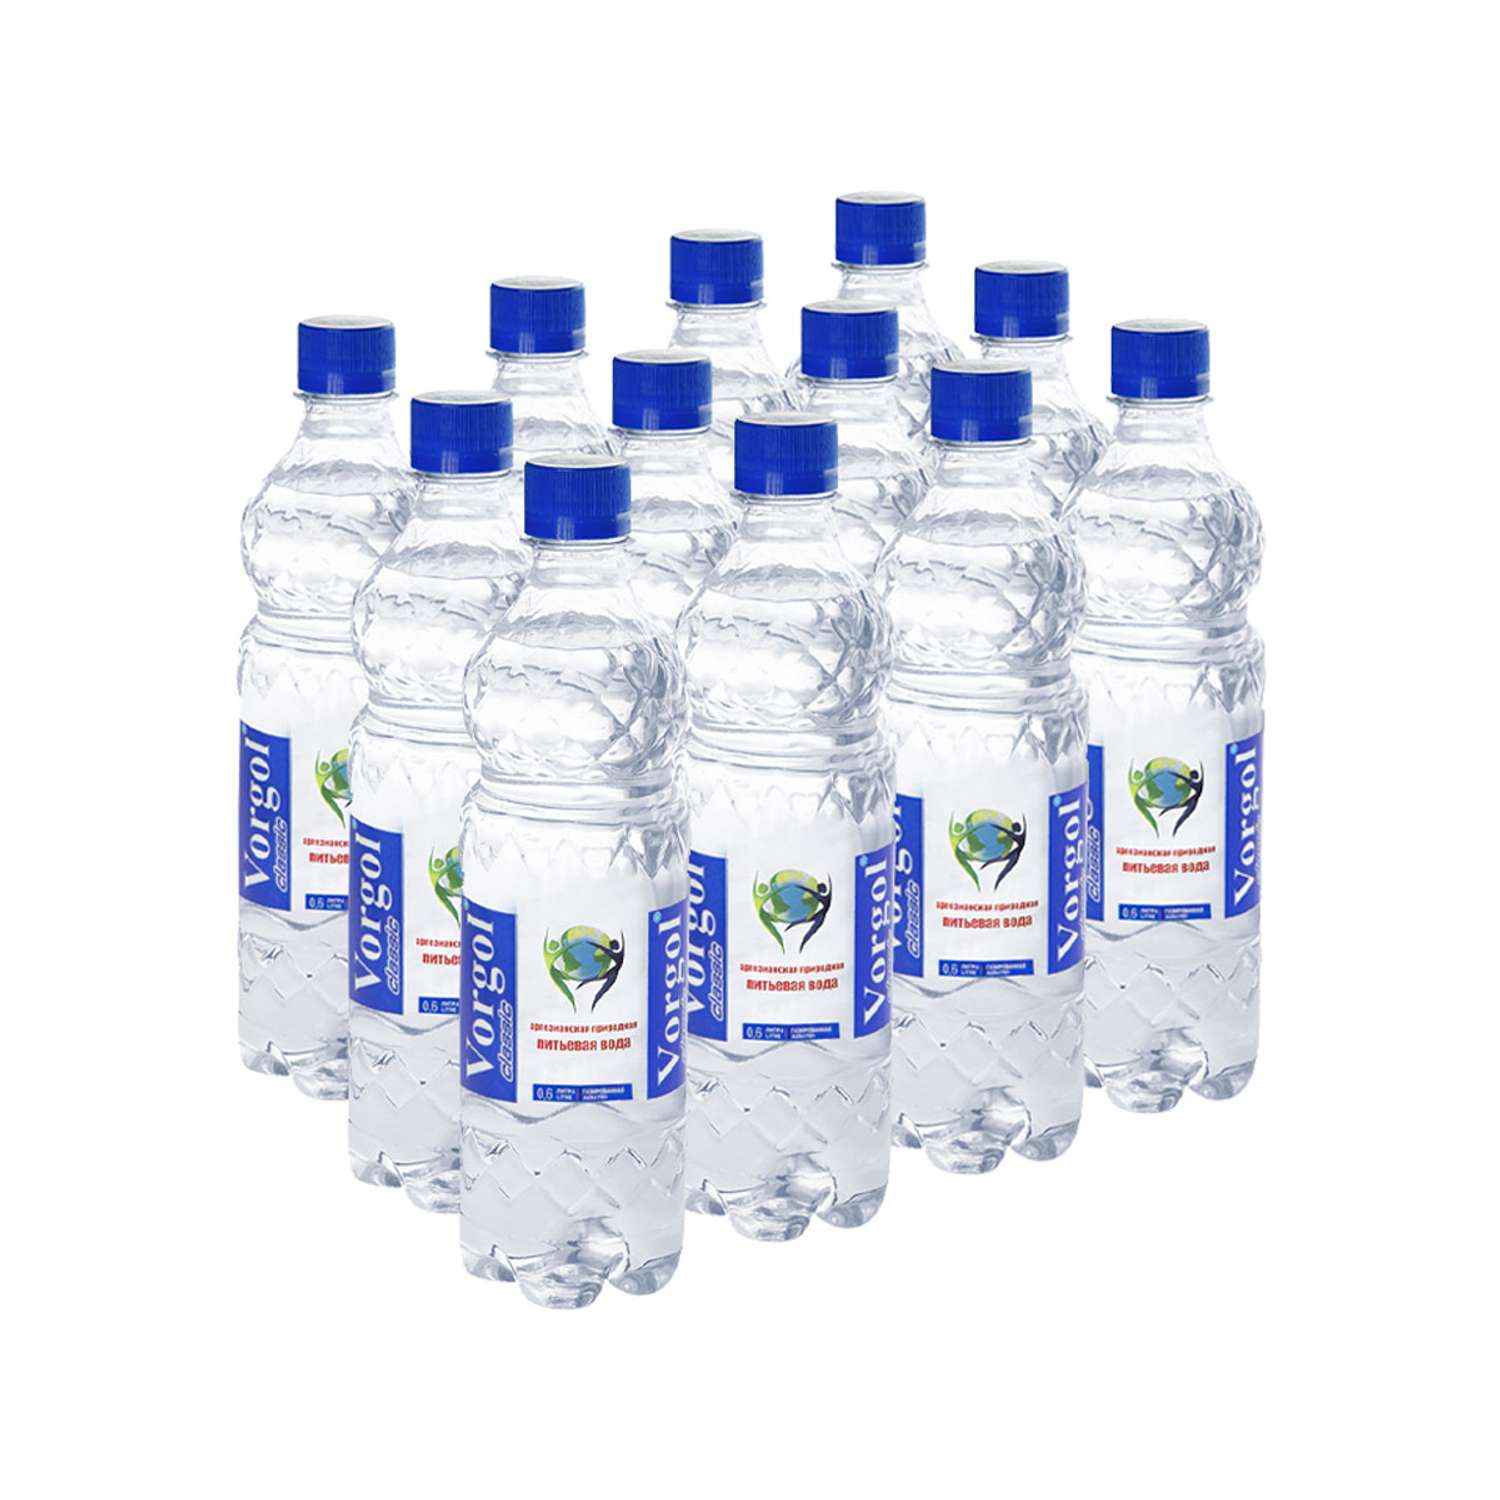 Вода питьевая Vorgol природная артезианская газированная 12 шт. по 0.6 л - фото 1